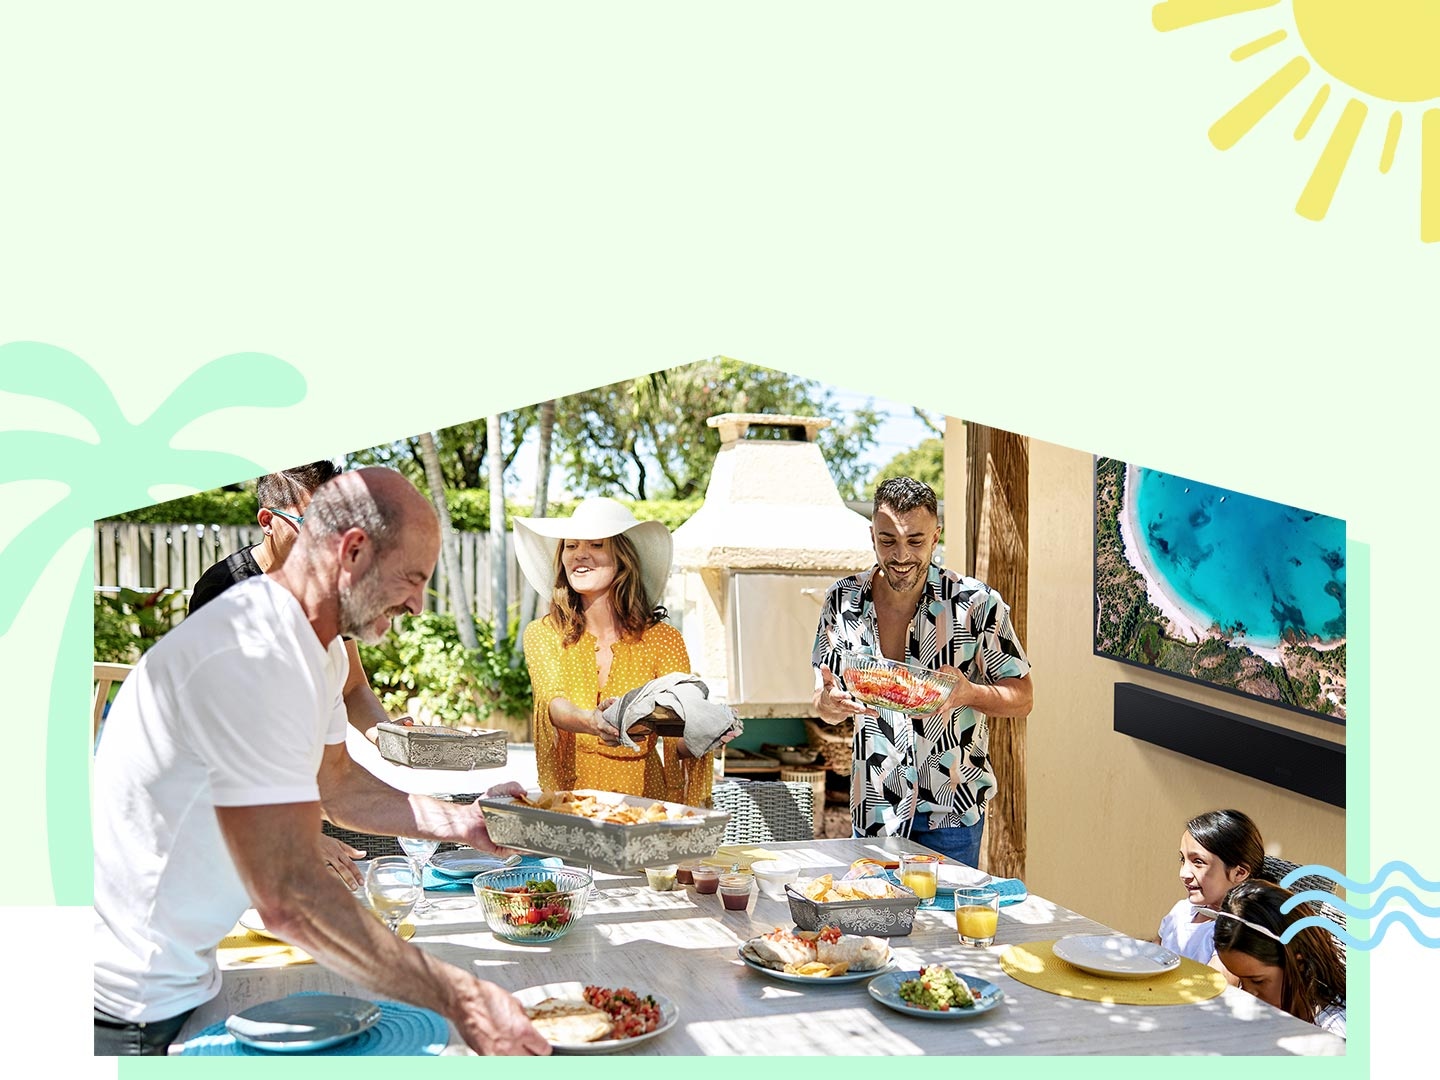 Družinski člani uživajo v poletnem vremenu in na mizo postavljajo hrano pod veliko pergolo na vrtu. The Terrace in Soundbar zvočnik v ozadju predvajata zabaven videoposnetek.